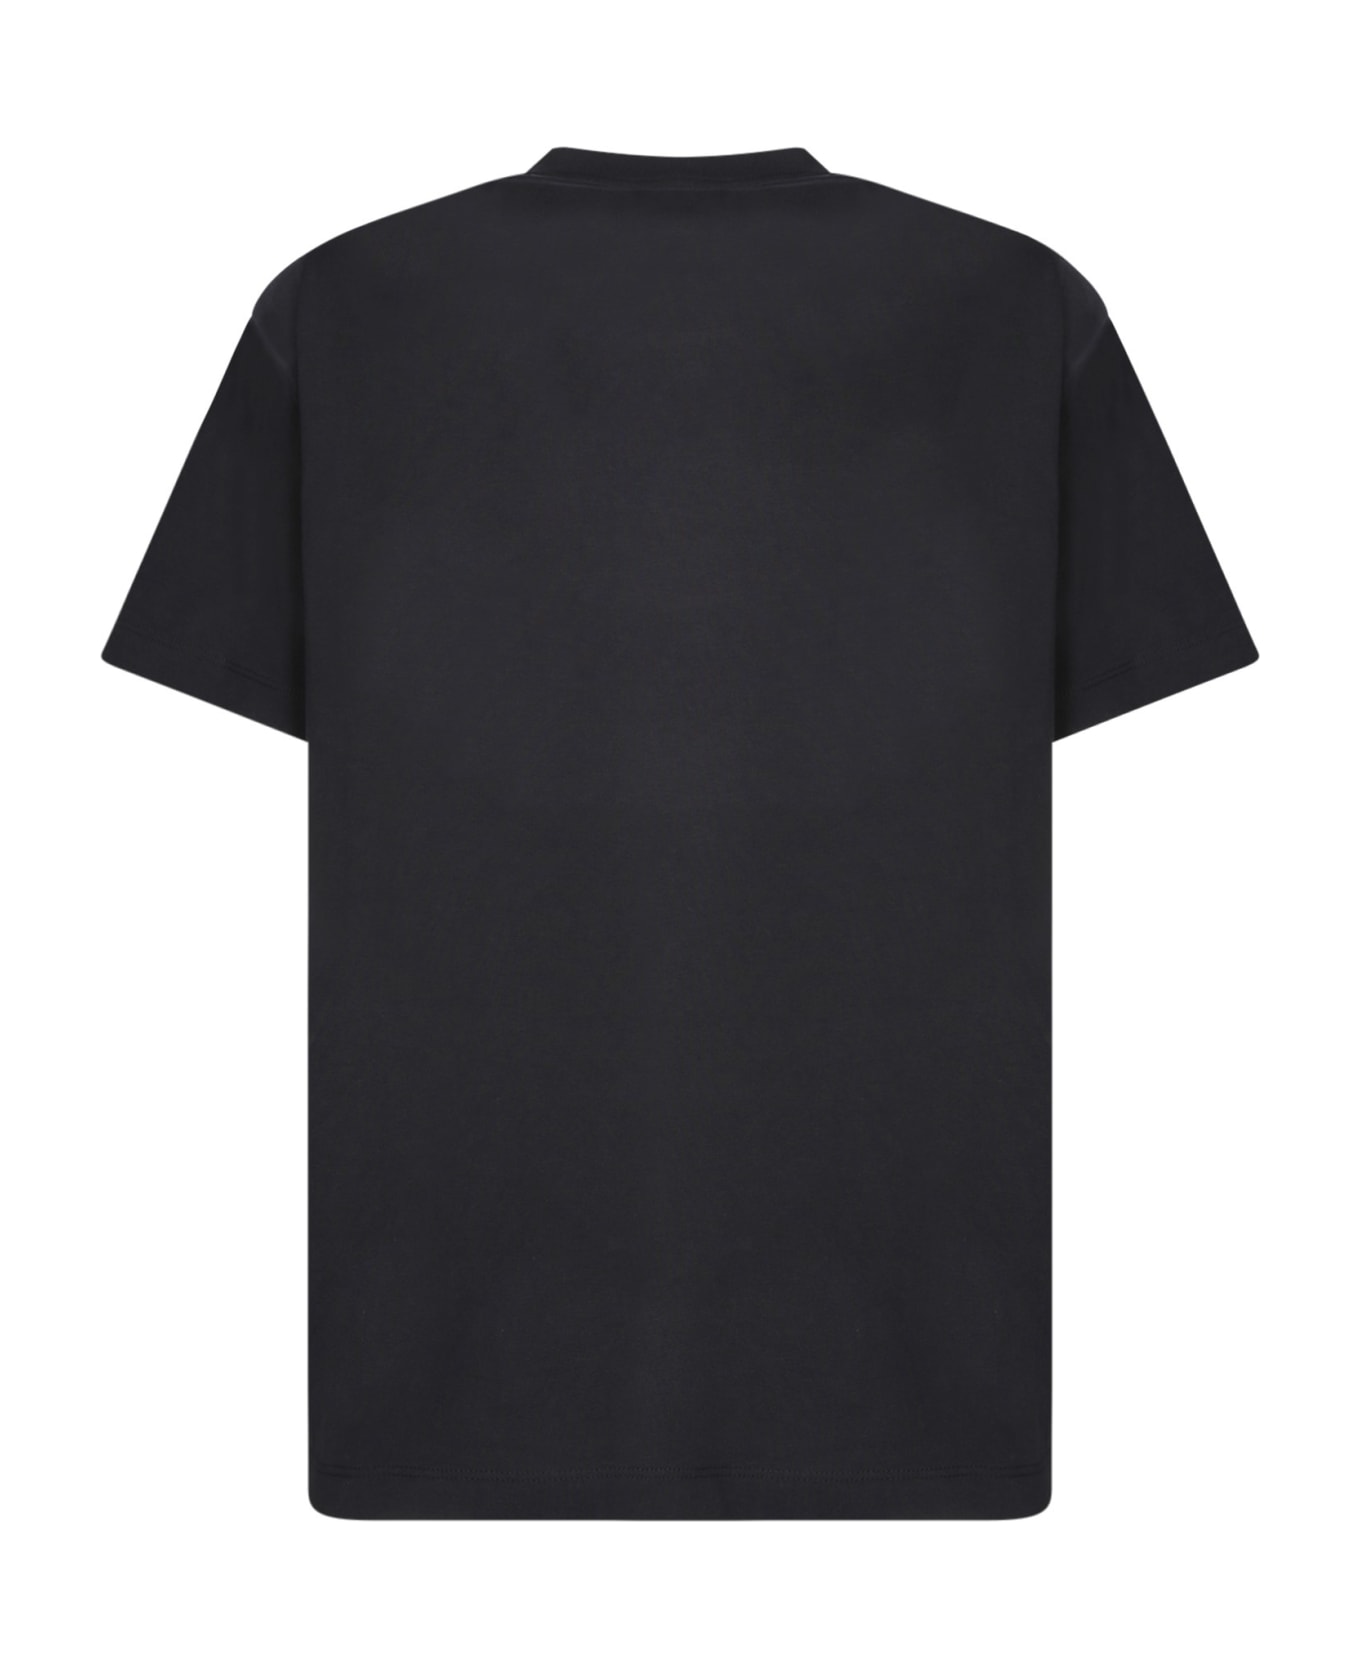 ROA Logo Black T-shirt - Black